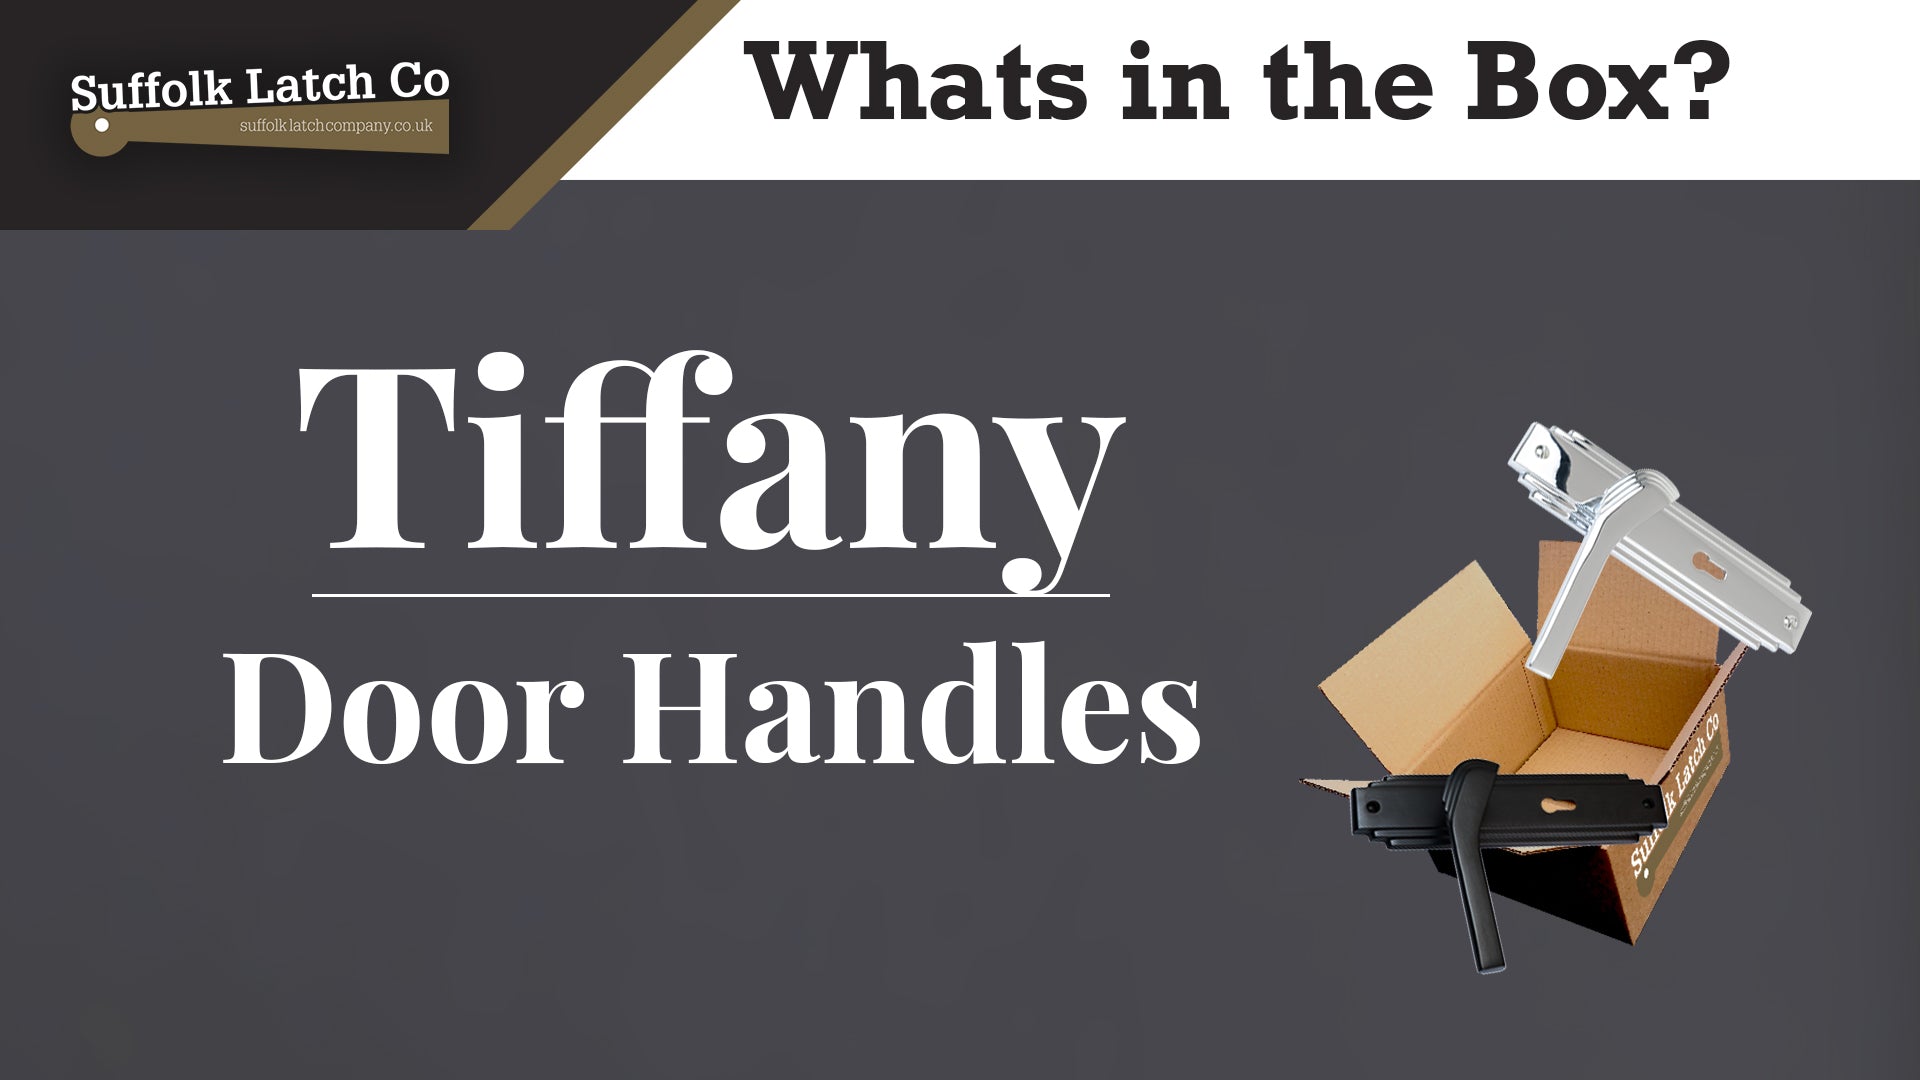 What's in the box: Tiffany Door Handles